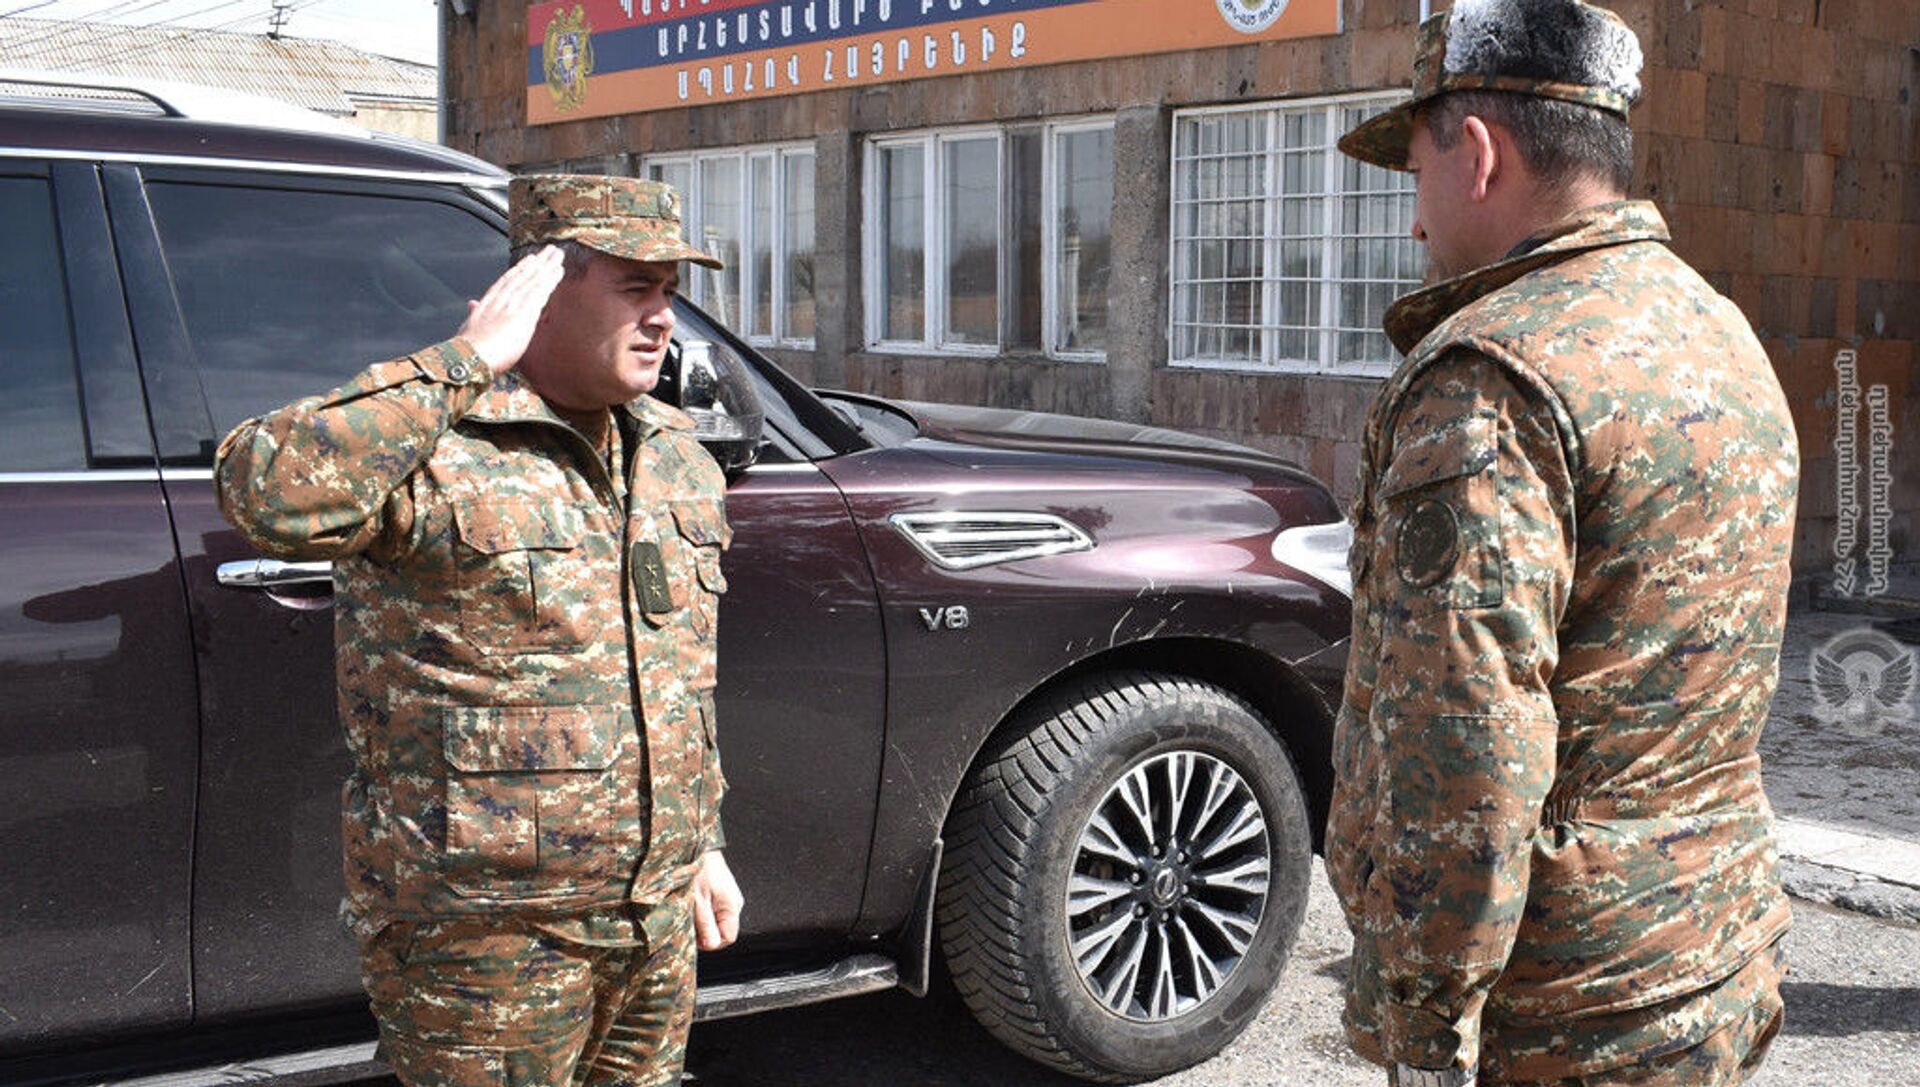 Начальник Генерального штаба ВС, генерал-лейтенант Артак Давтян посетил воинские части для проверки готовности личного состава (7 апреля 2021). - Sputnik Արմենիա, 1920, 07.04.2021